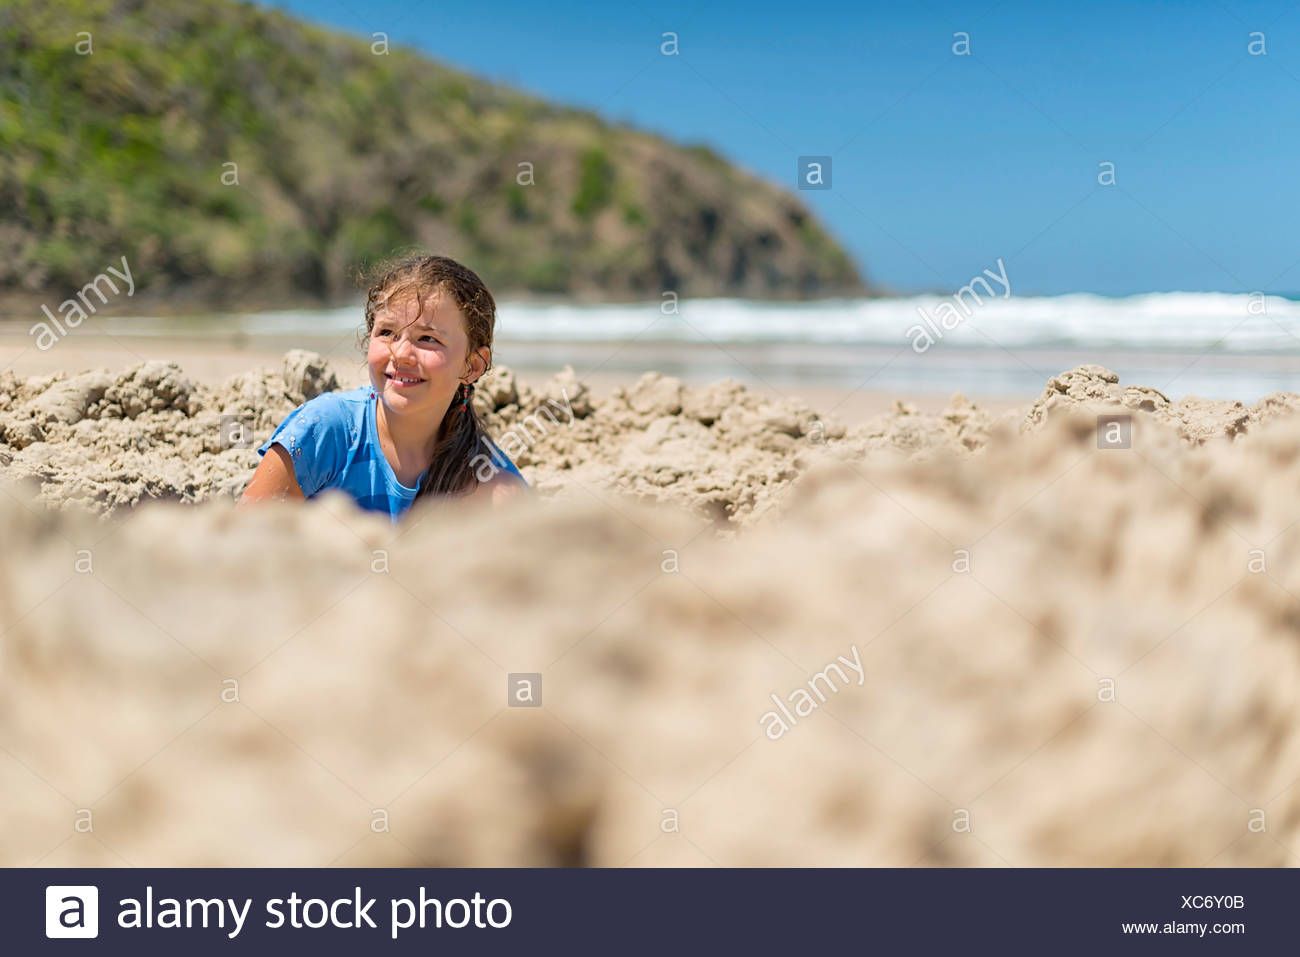 Aussie girl nude beach byron